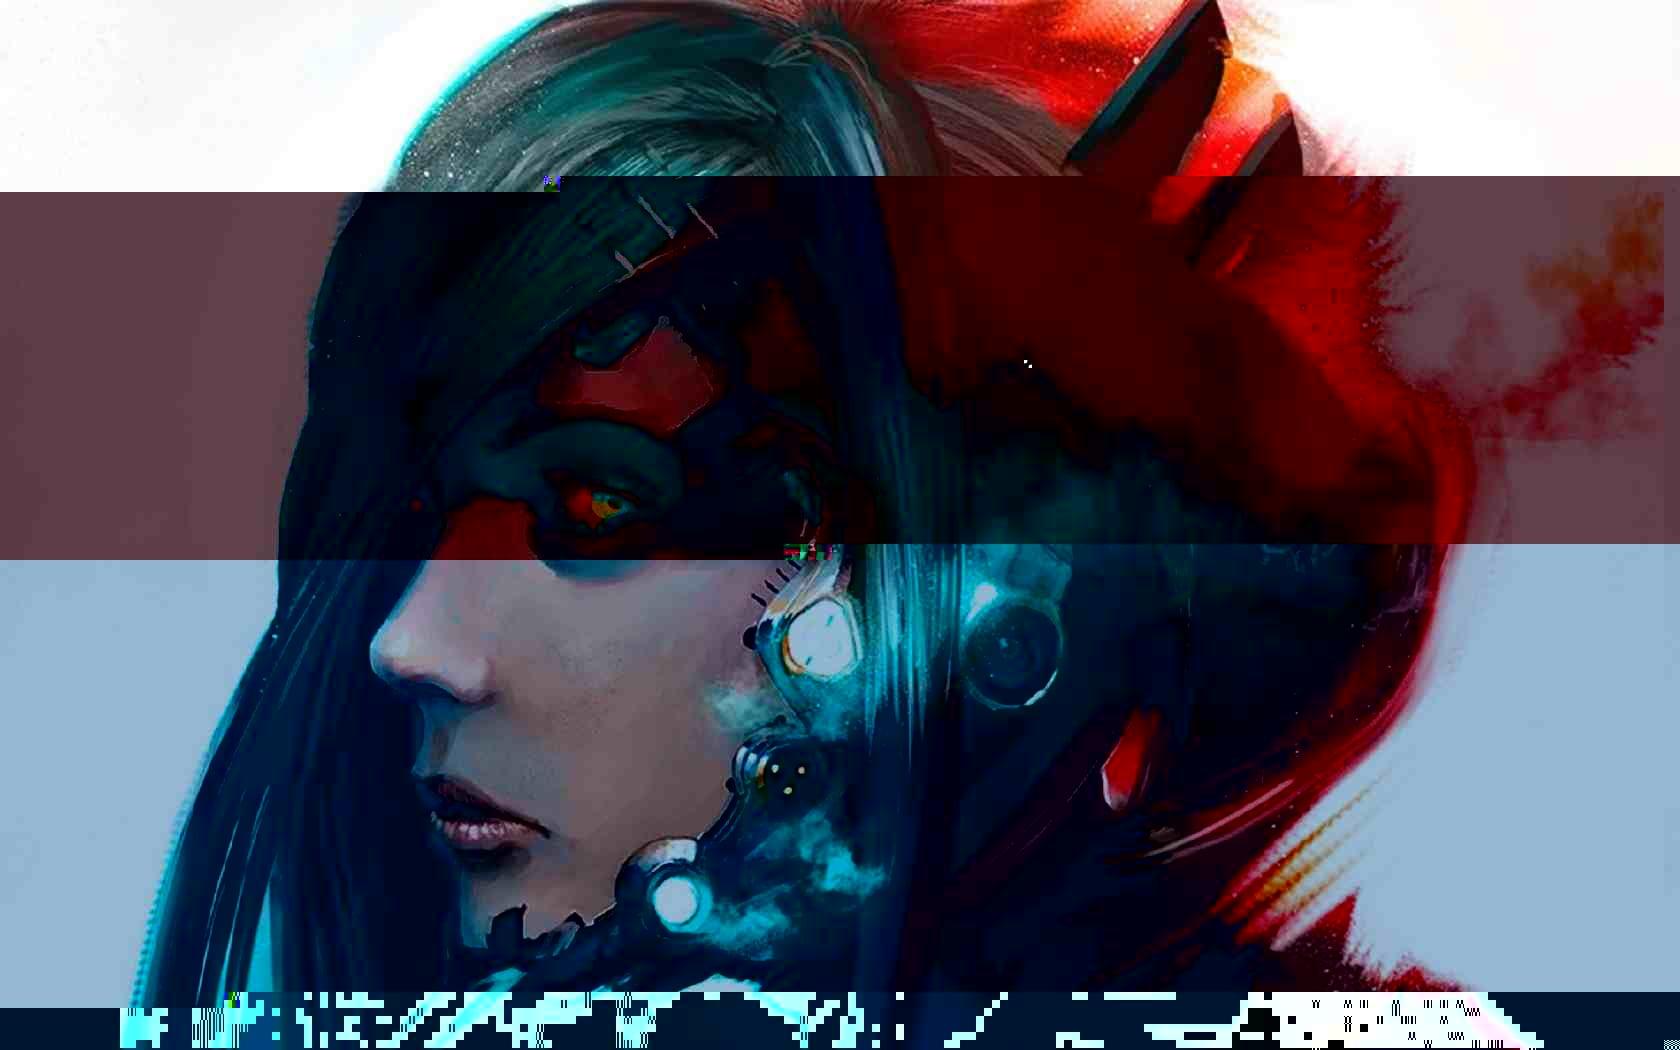 Anime woman digital wallpaper, glitch art, cyberpunk, robot